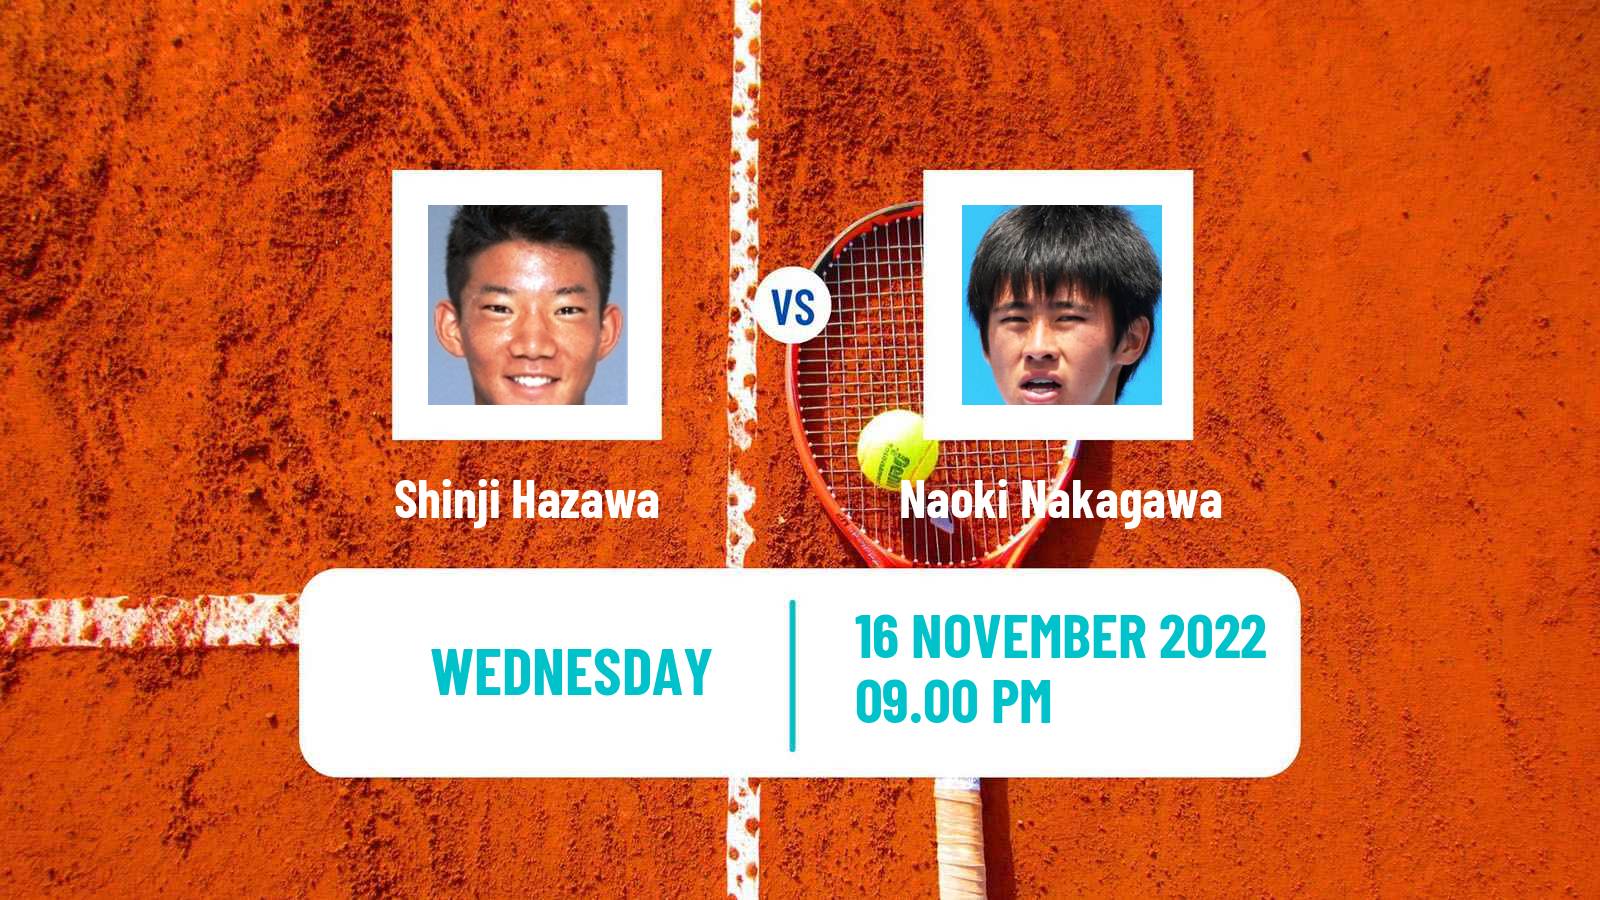 Tennis ATP Challenger Shinji Hazawa - Naoki Nakagawa